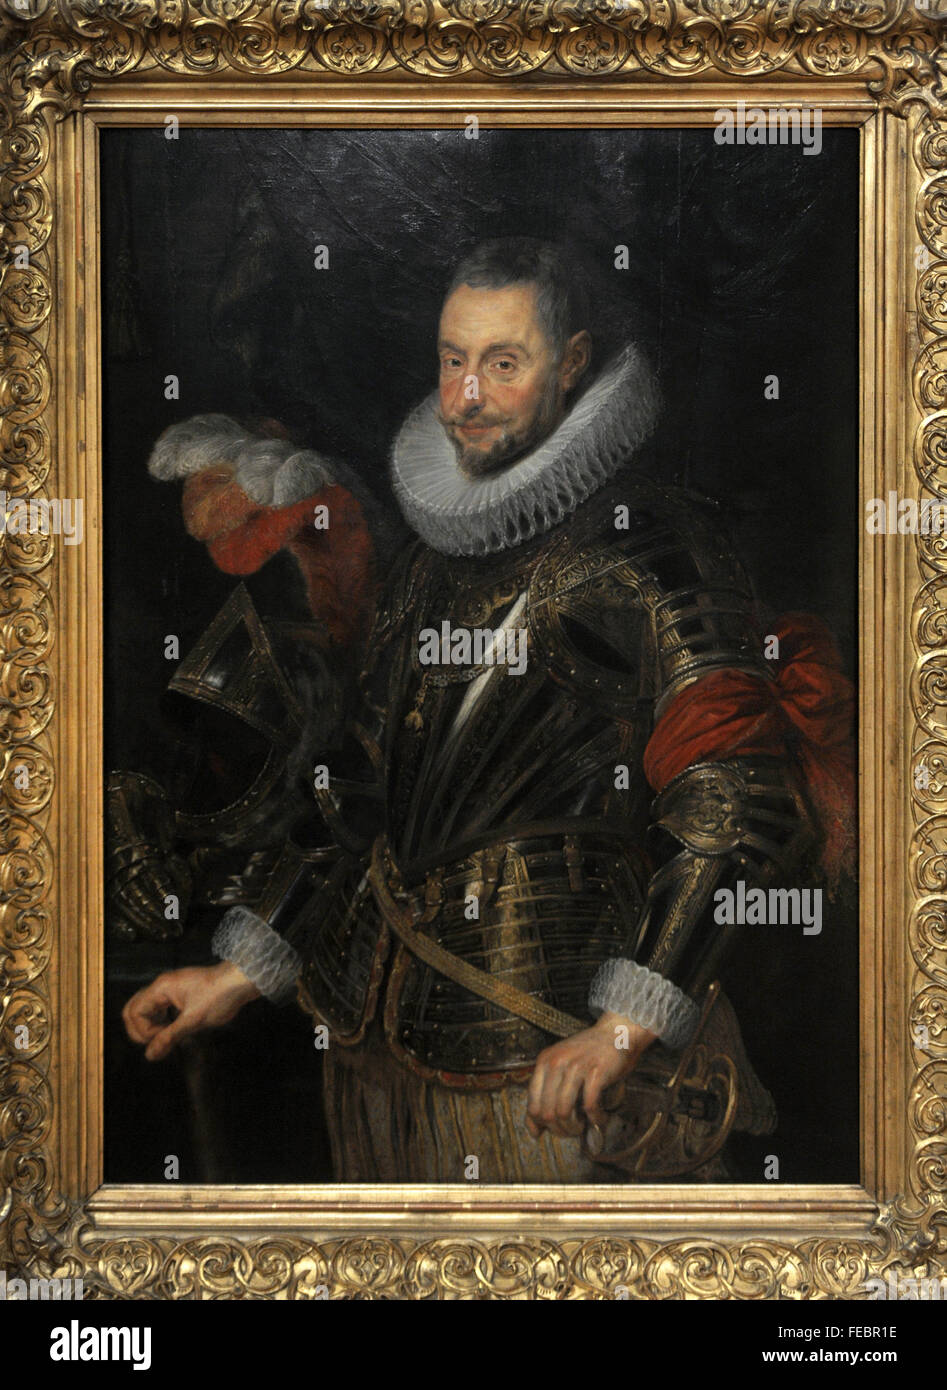 Peter Paul Rubens (1577-1640). Peintre flamand. Portrait de Marchese Ambrogio Spinola (1569-1630). Galerie nationale. Prague. République tchèque. Banque D'Images